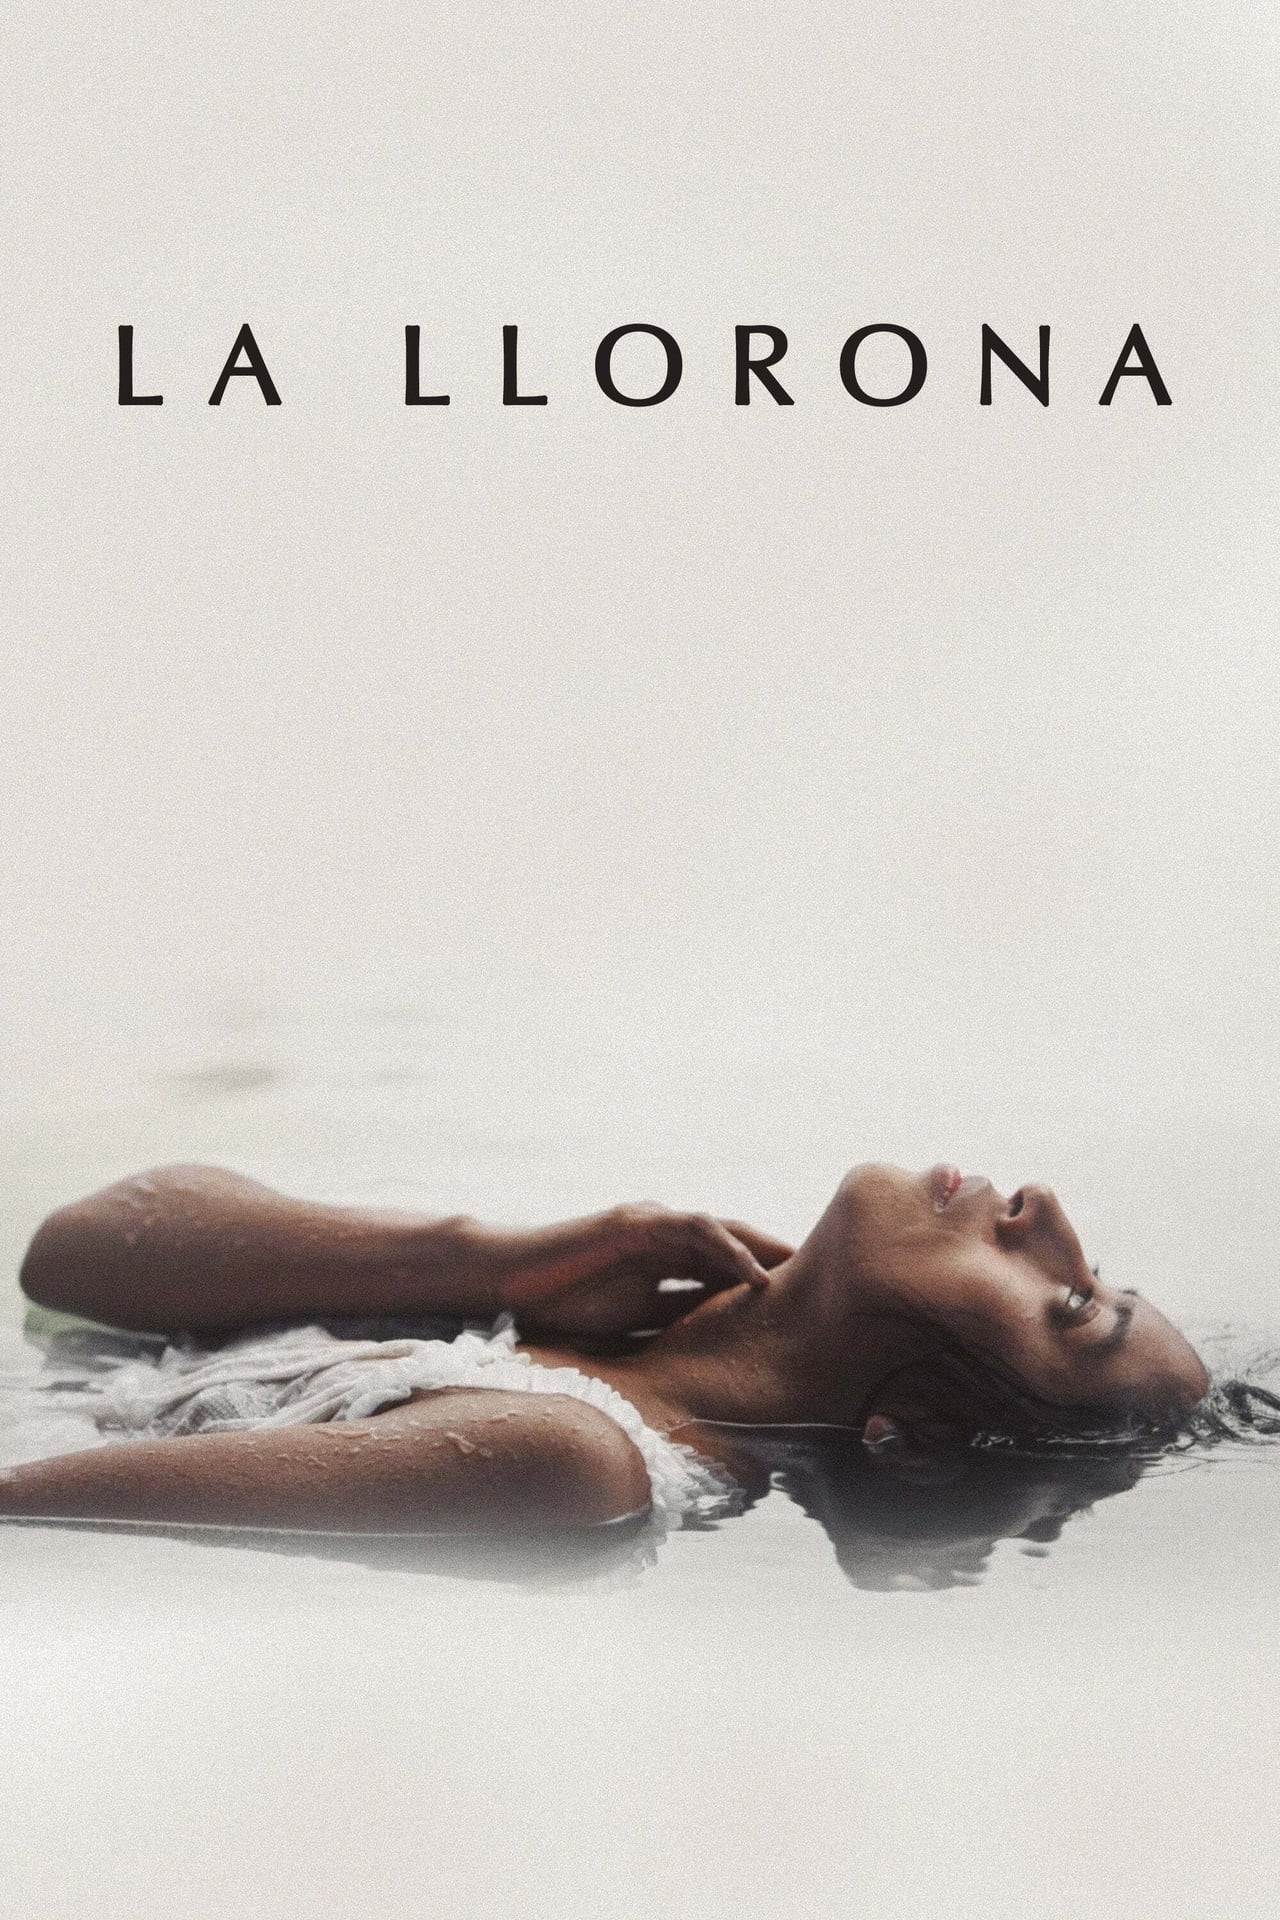 La Llorona poster